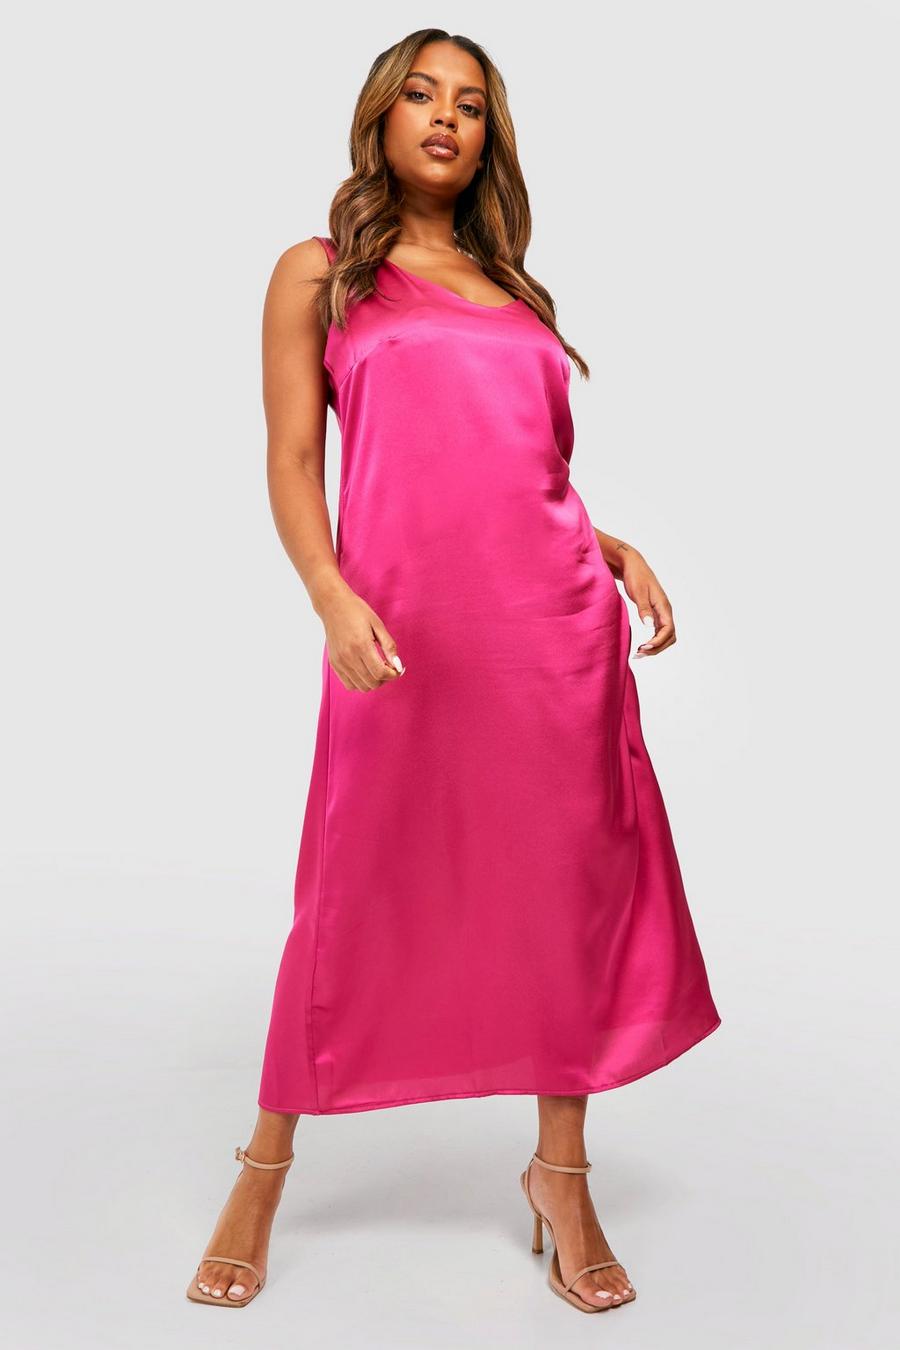 ורוד לוהט rosa שמלת סליפ מסאטן עם כתפיות רחבות, למידות גדולות